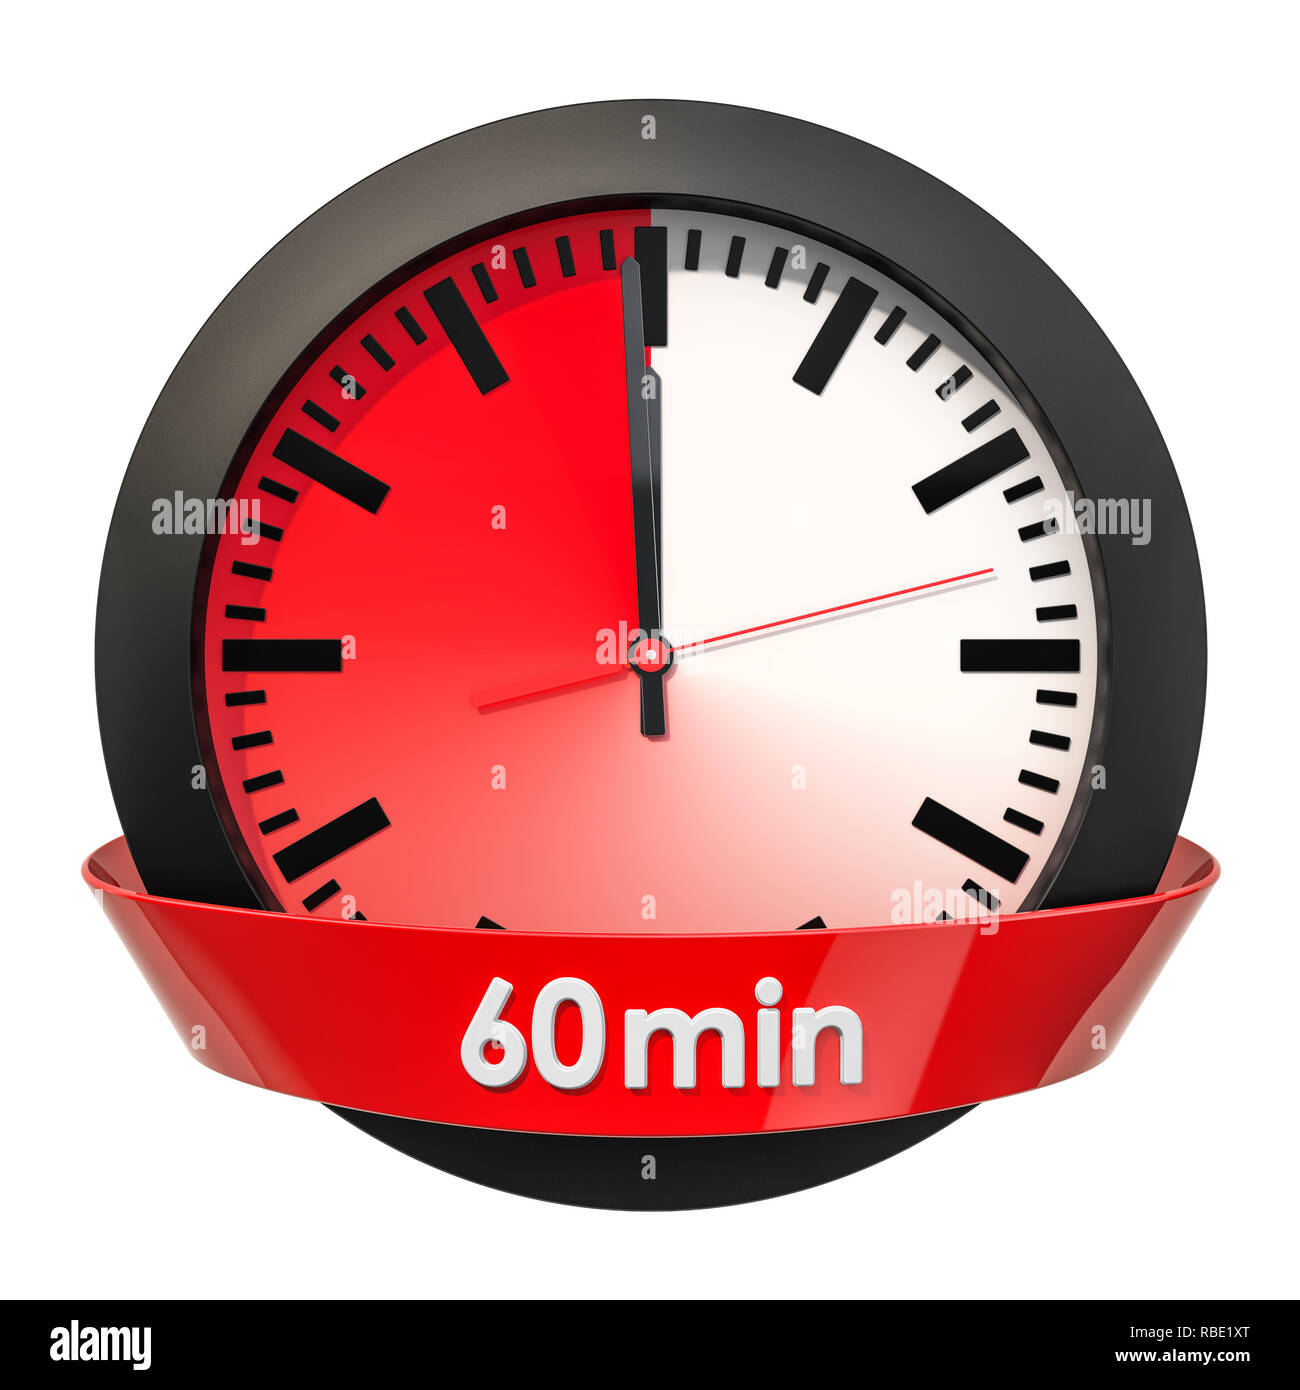 Время на 5 60 минут. Часы 60 минут. Секундомер 60 минут. Секундомер 40 минут. Часы 60 минут картинка.